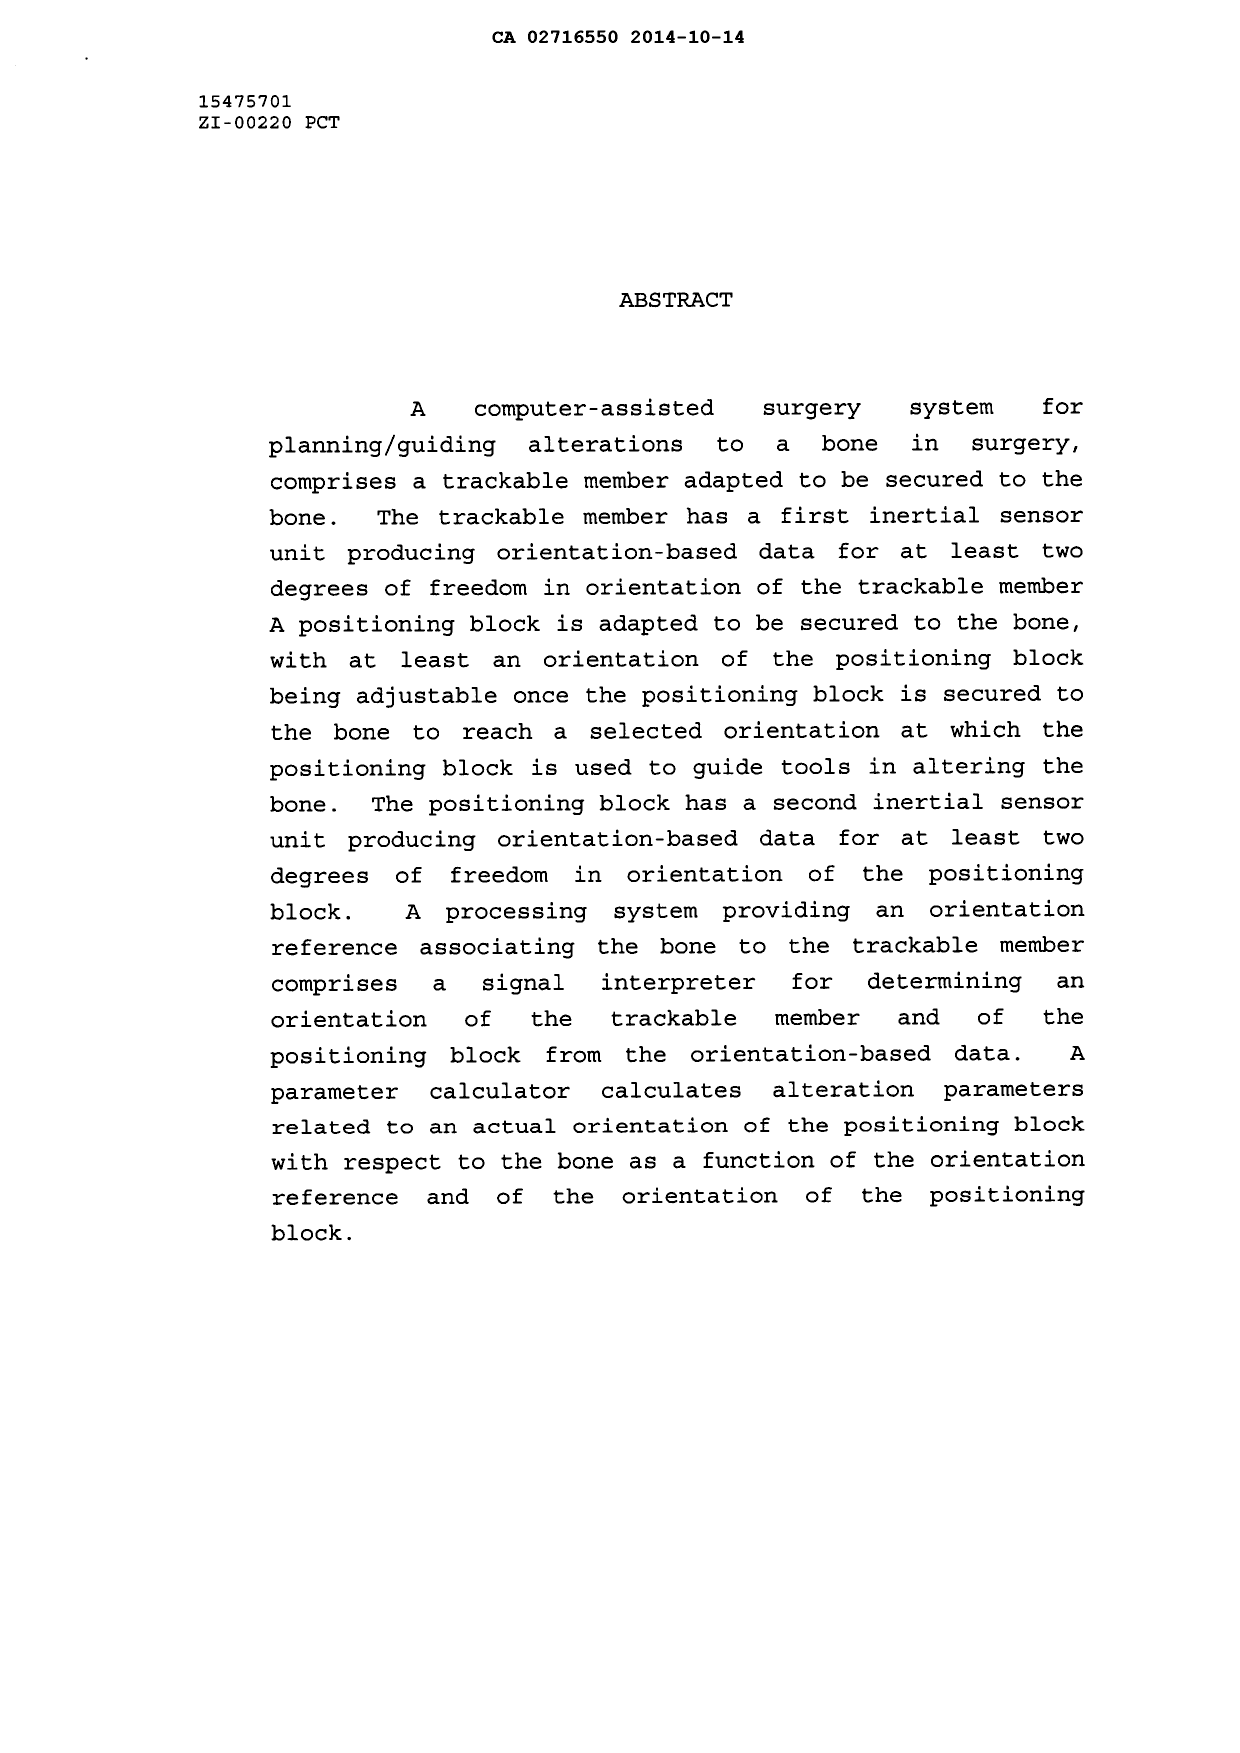 Document de brevet canadien 2716550. Abrégé 20131214. Image 1 de 1